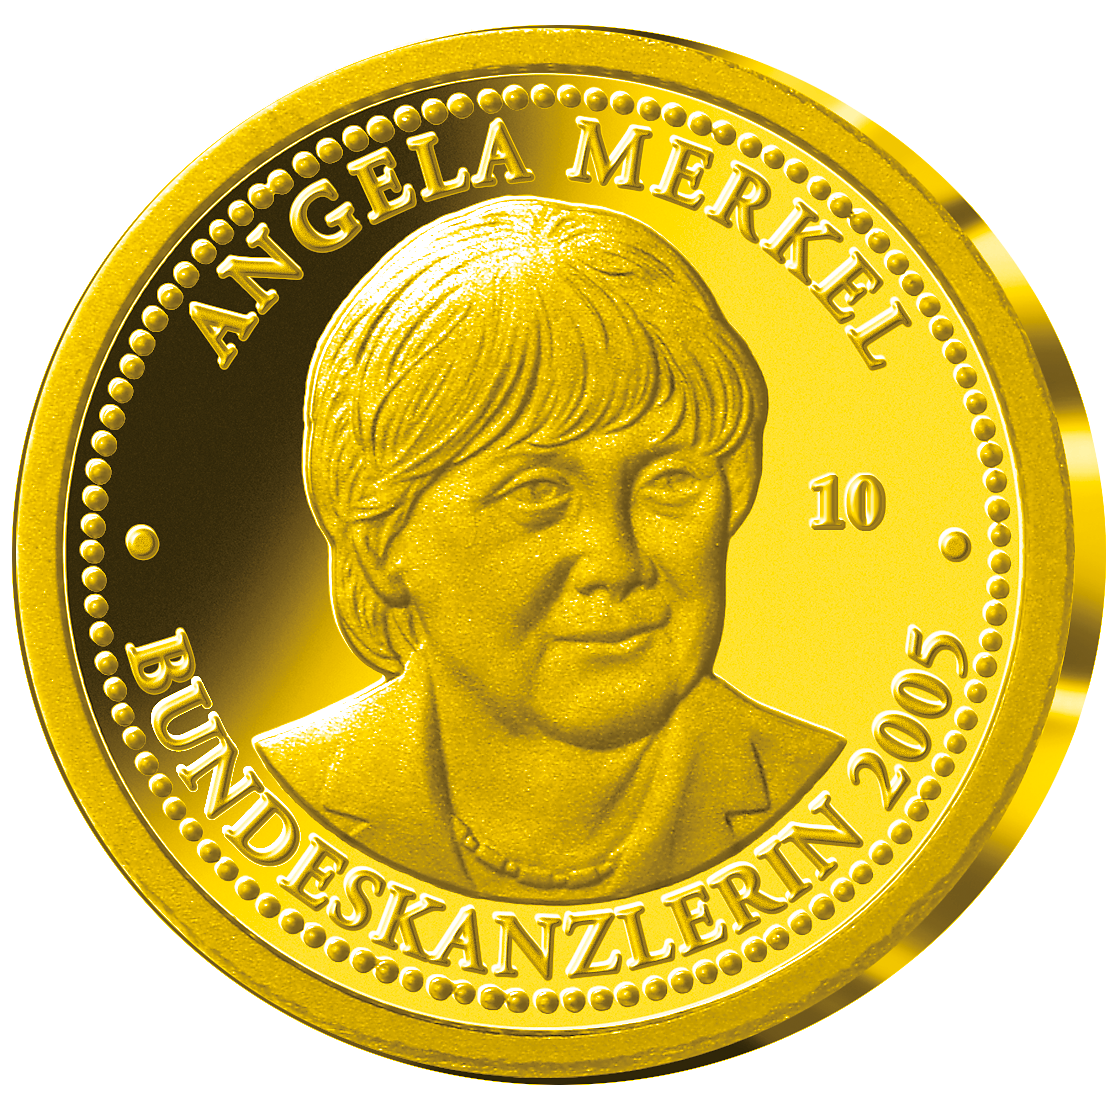 Goldprägung mit Angela Merkel